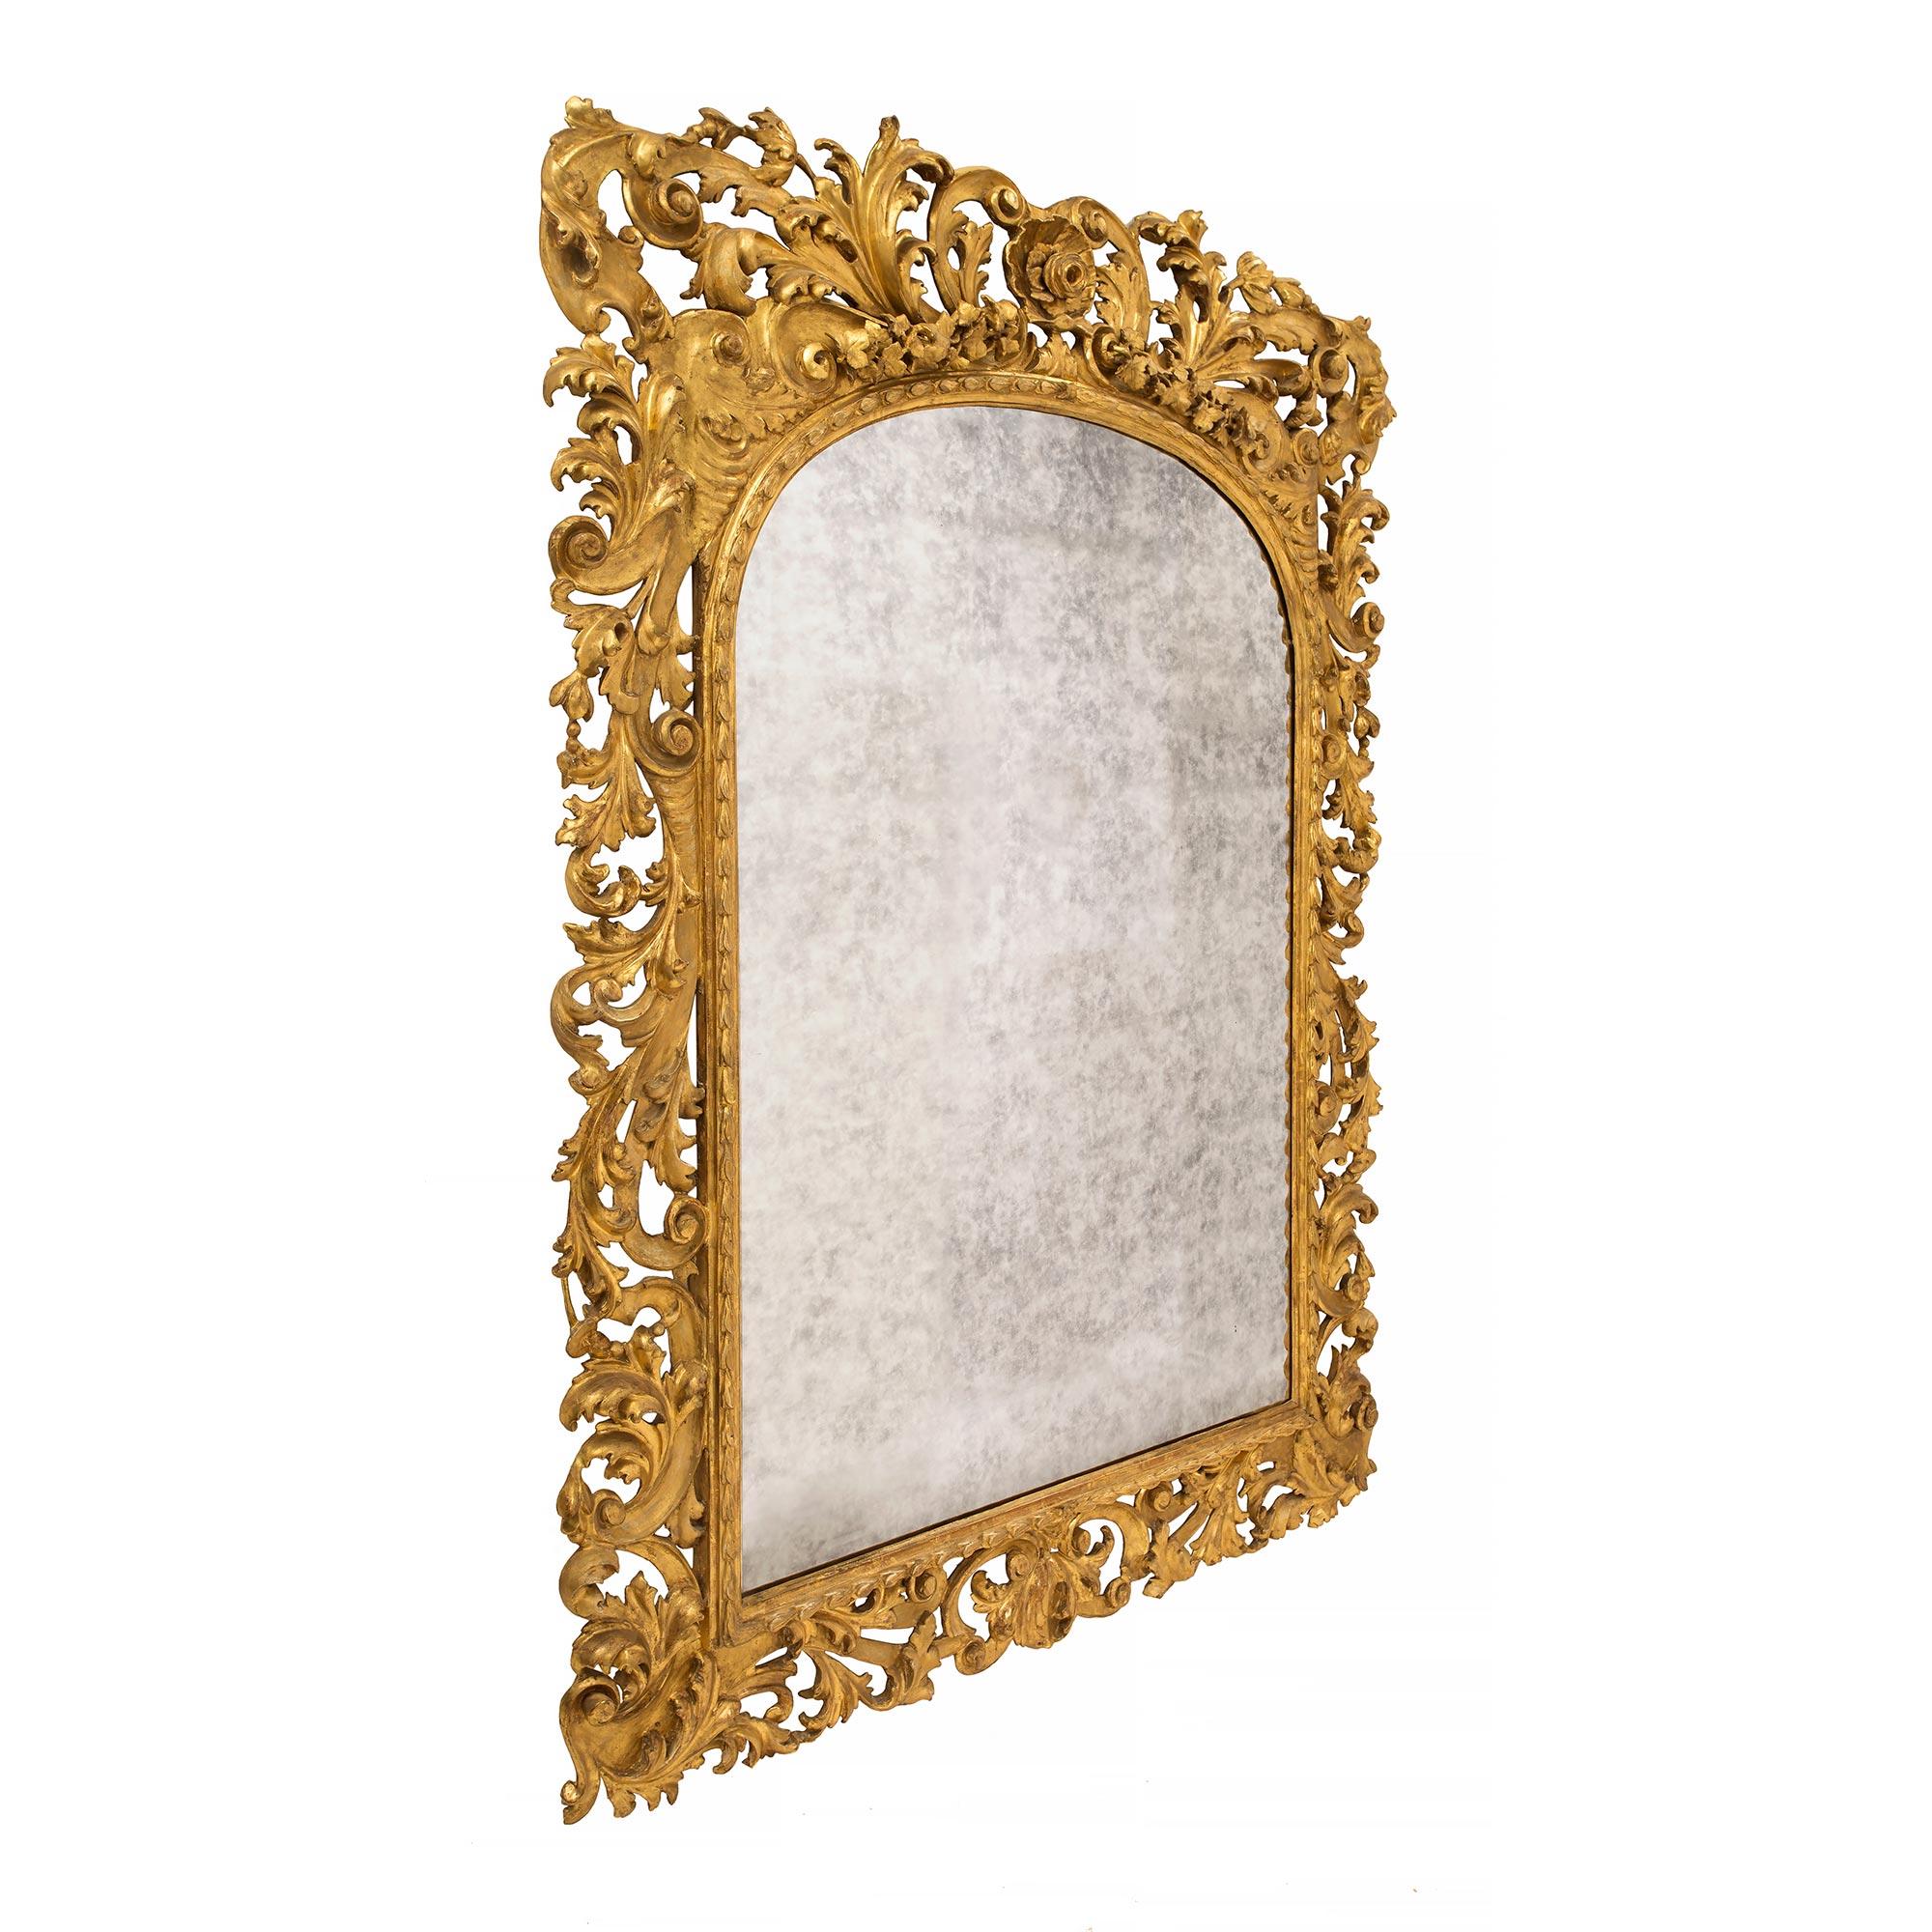 Un spectaculaire miroir baroque italien du milieu du XIXe siècle en bois doré. La plaque du miroir est entourée d'un cadre ajouré fortement et richement sculpté. Le cadre est orné de magnifiques volutes en 